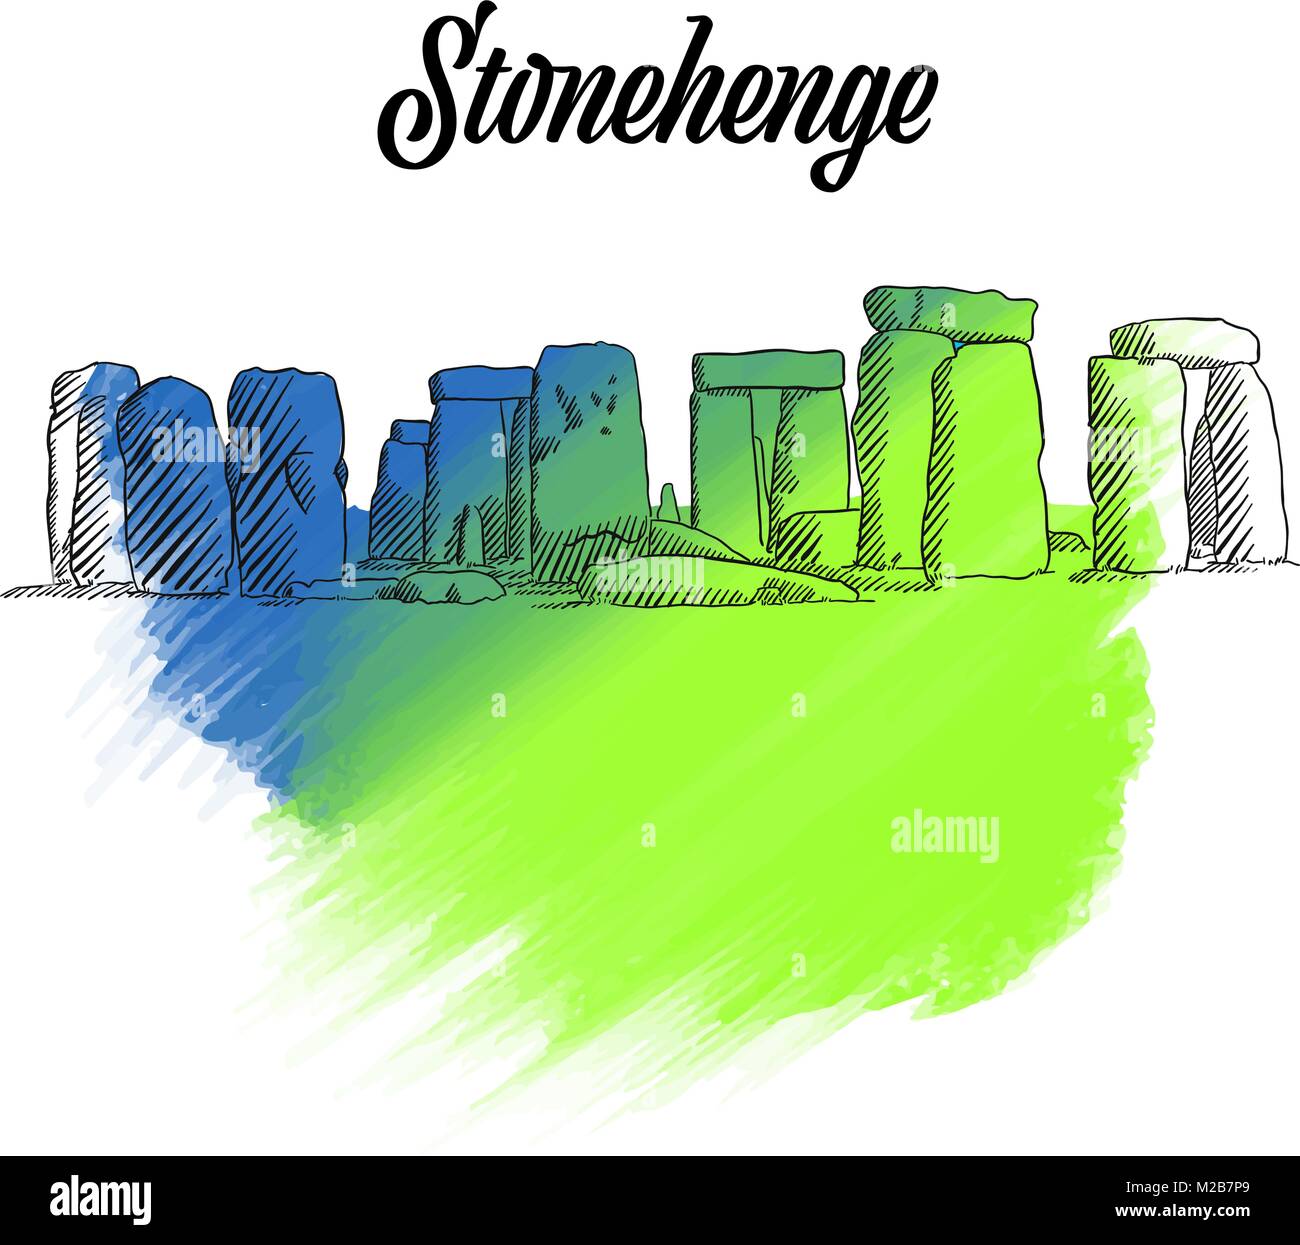 Stonehenge Inghilterra Sketch, disegnato a mano illustrazione di contorno per il progetto di stampa e travel marketing Illustrazione Vettoriale